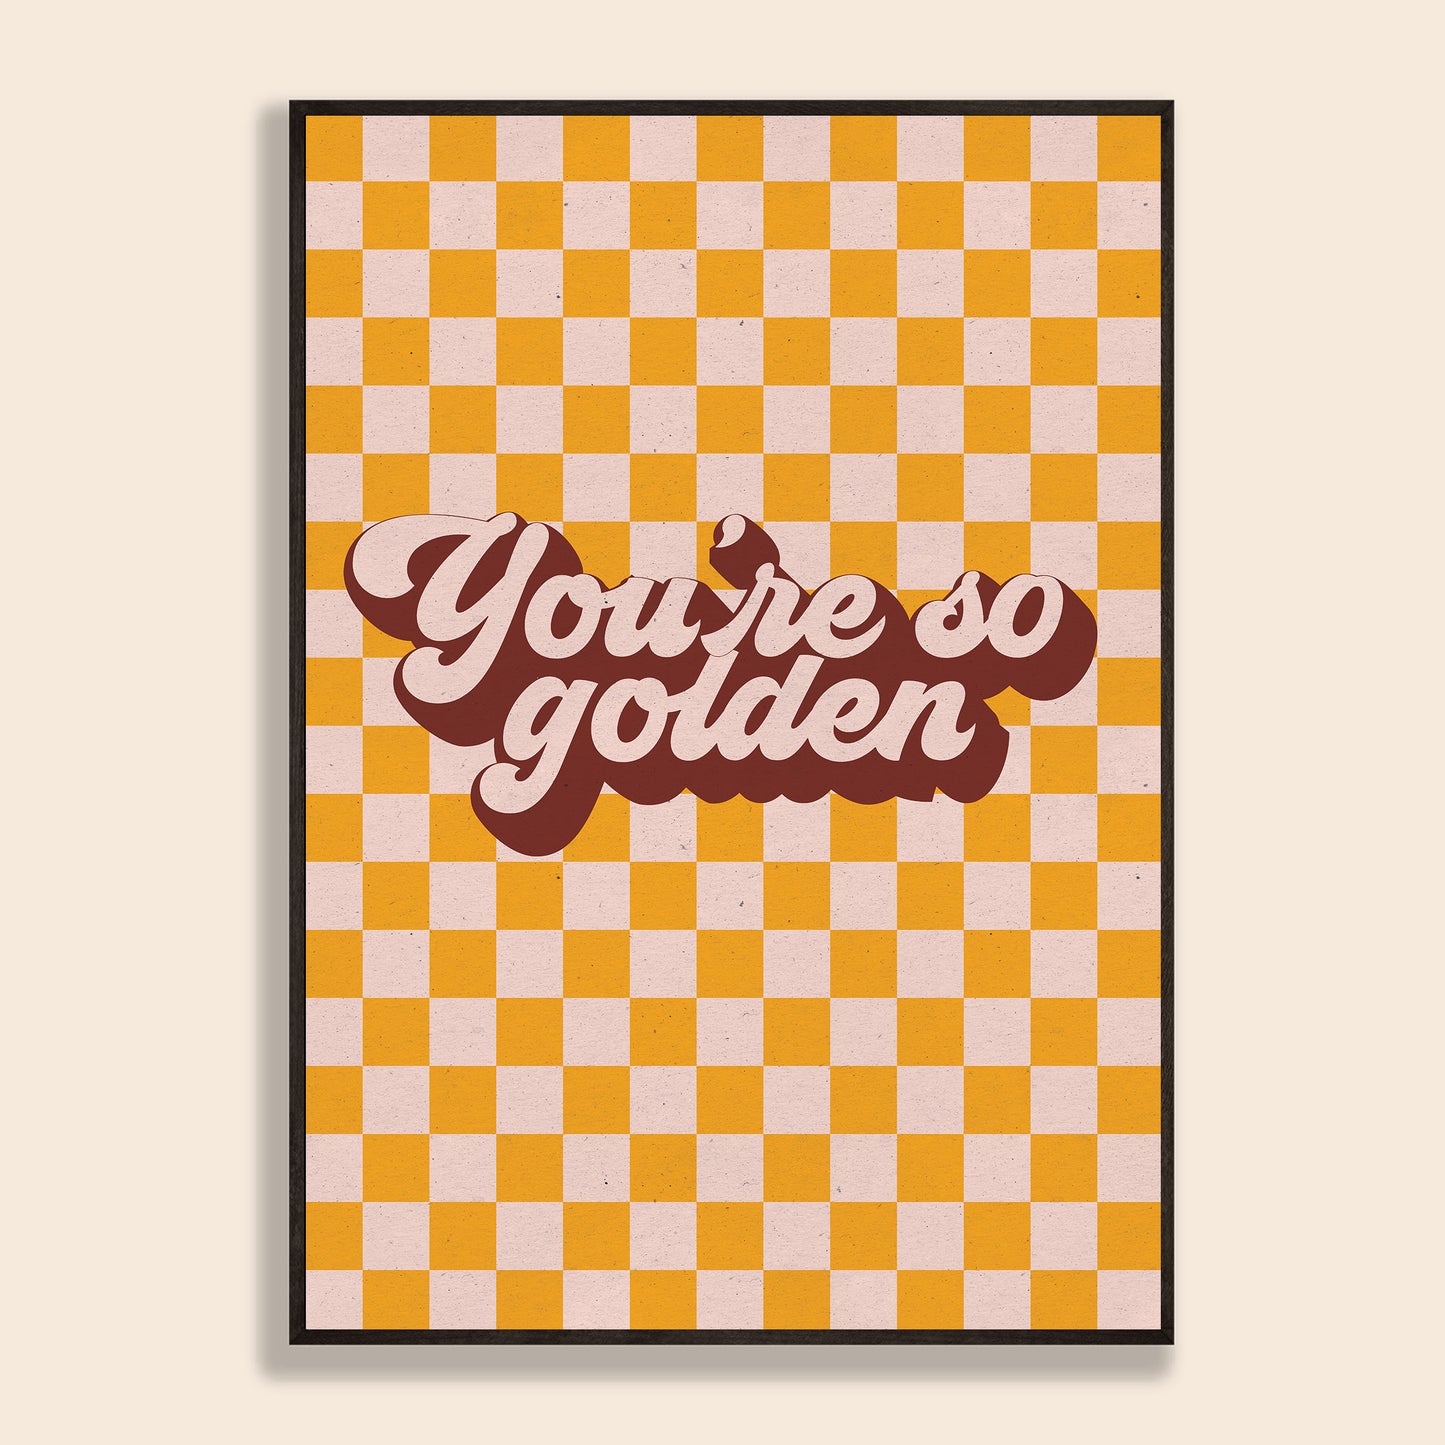 You're So Golden Print